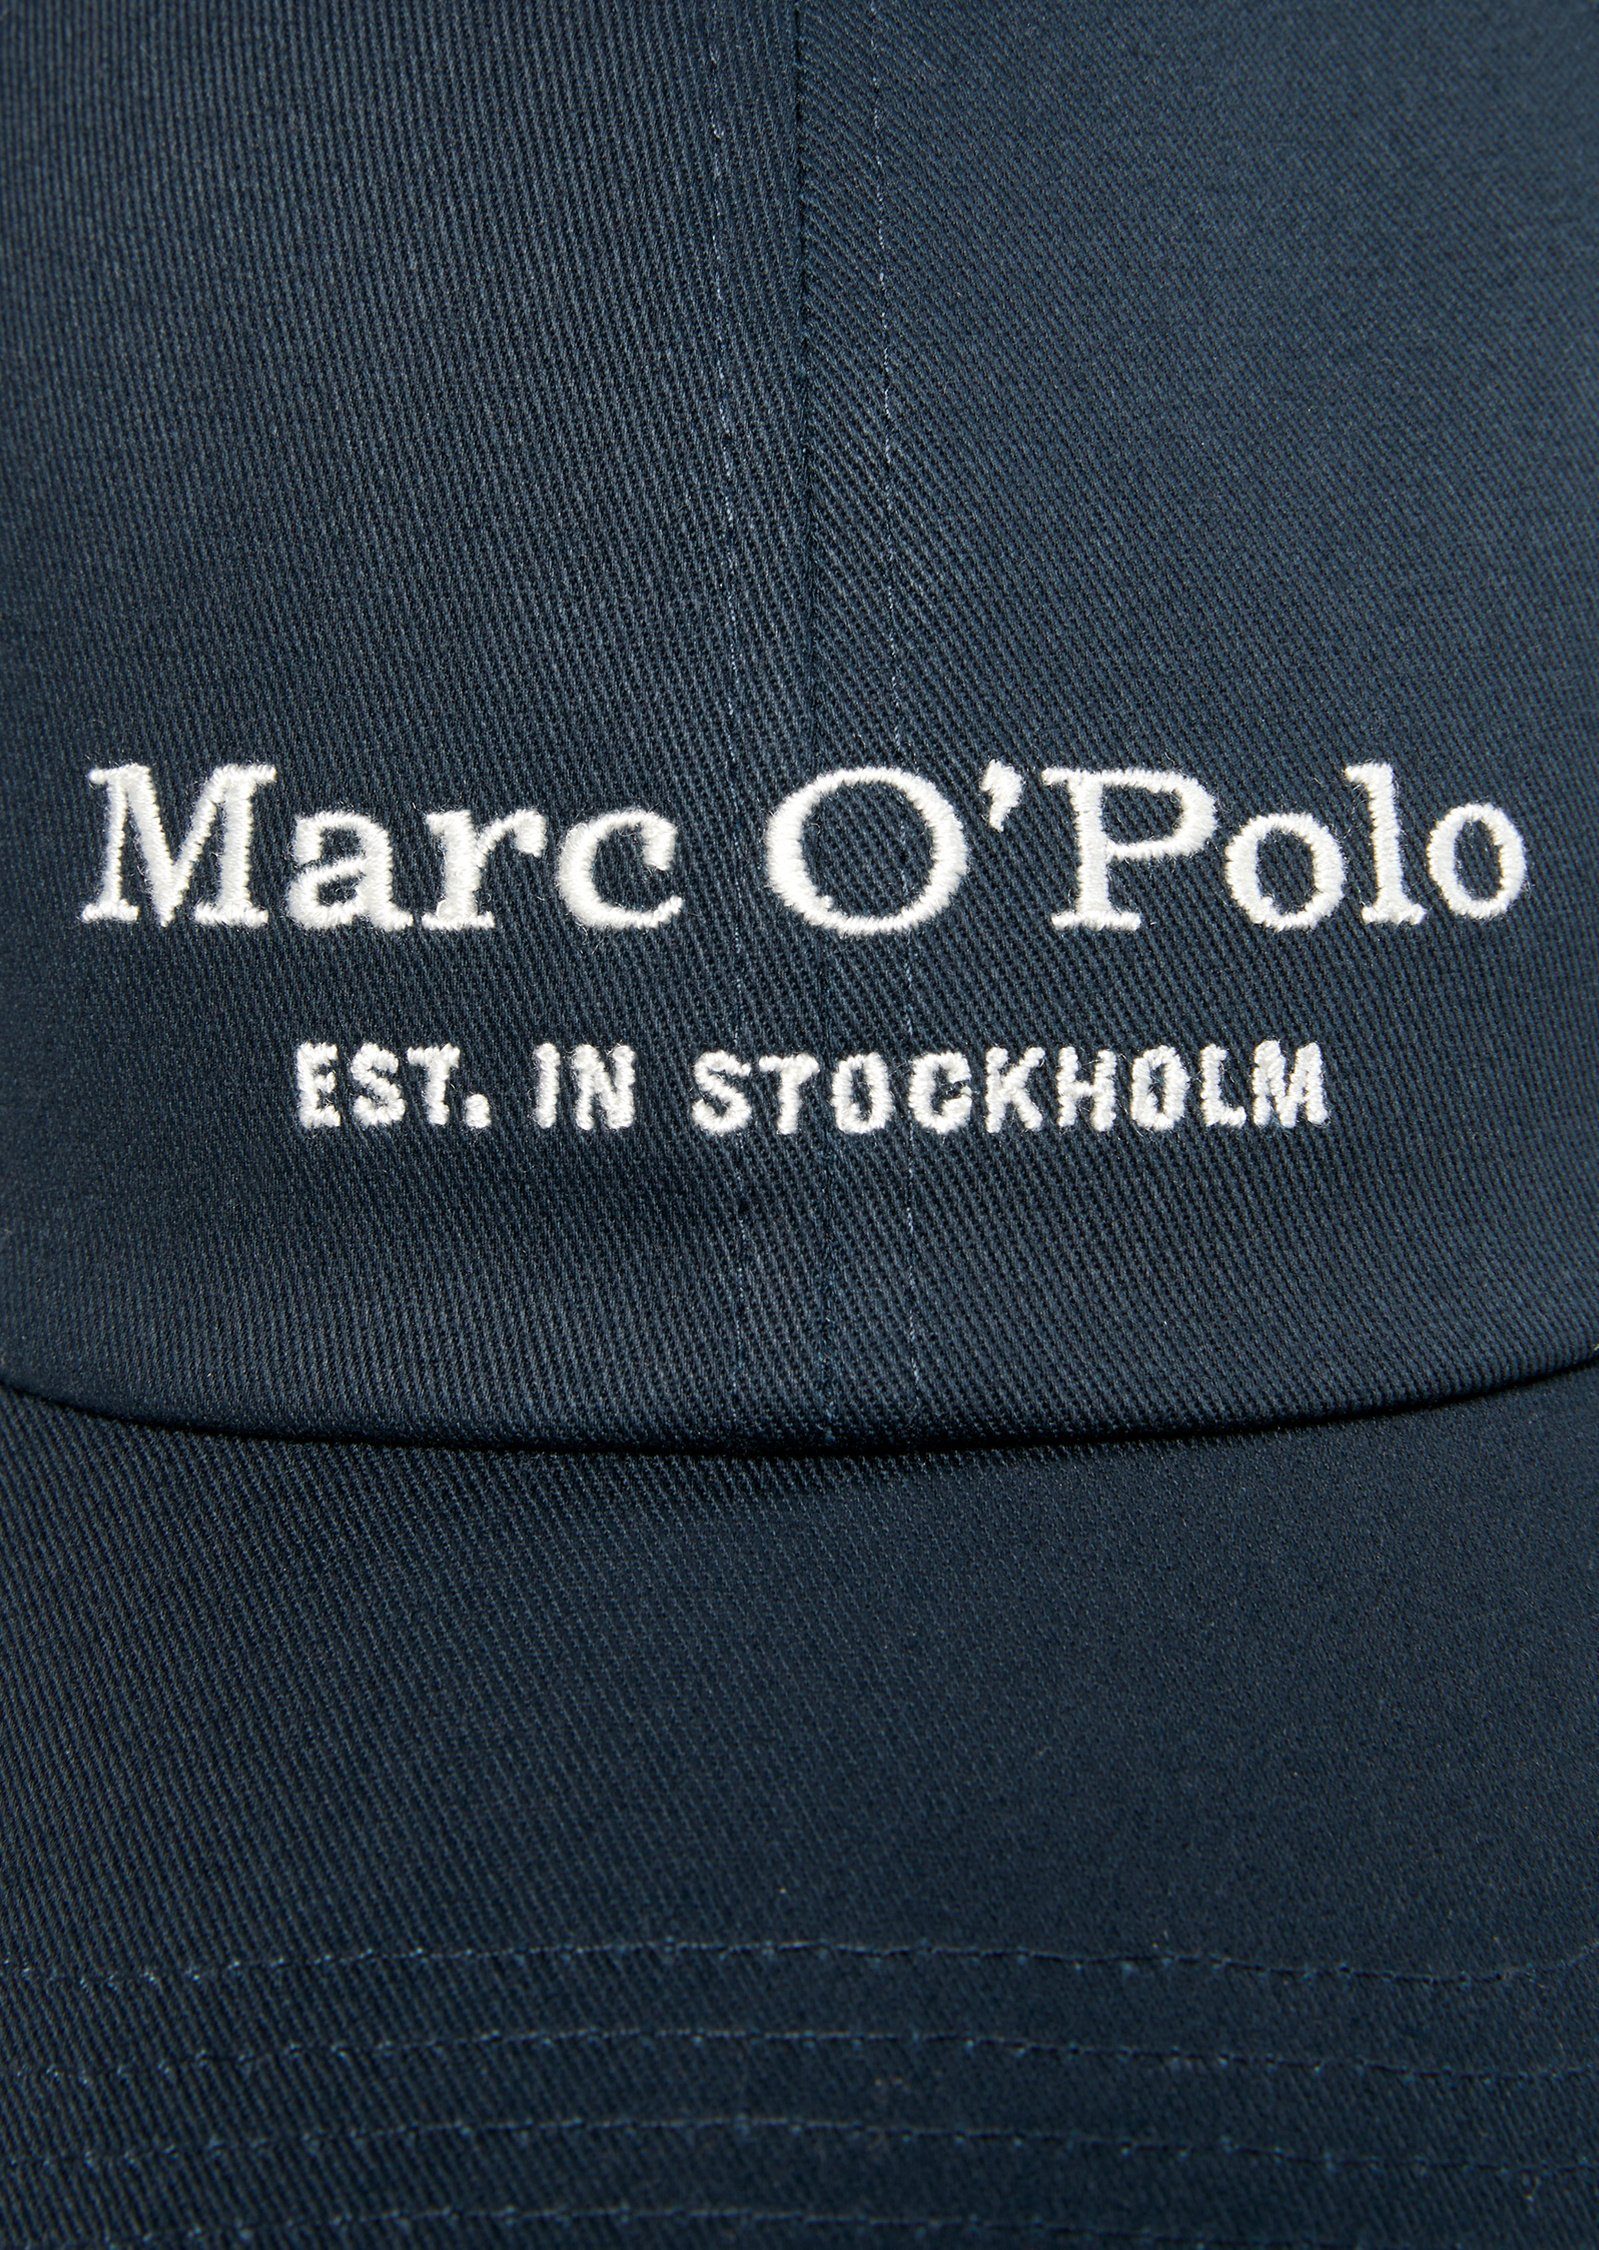 Marc dunkelblau Baseball Organic-Twill Cap O'Polo hochwertigem aus